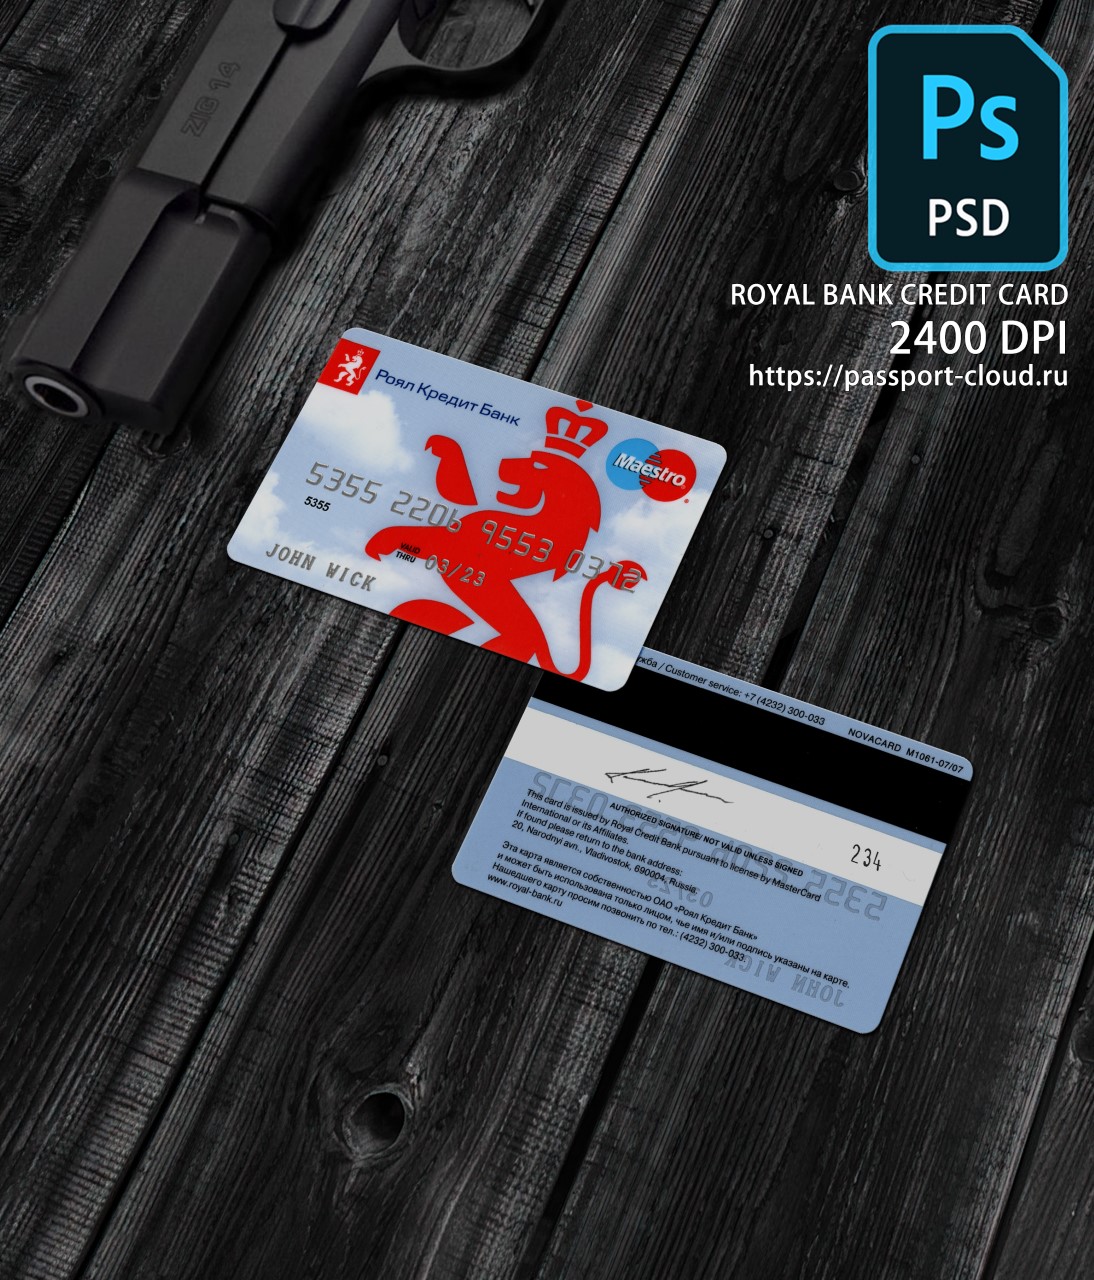 Royal Bank Credit Card PSD-0